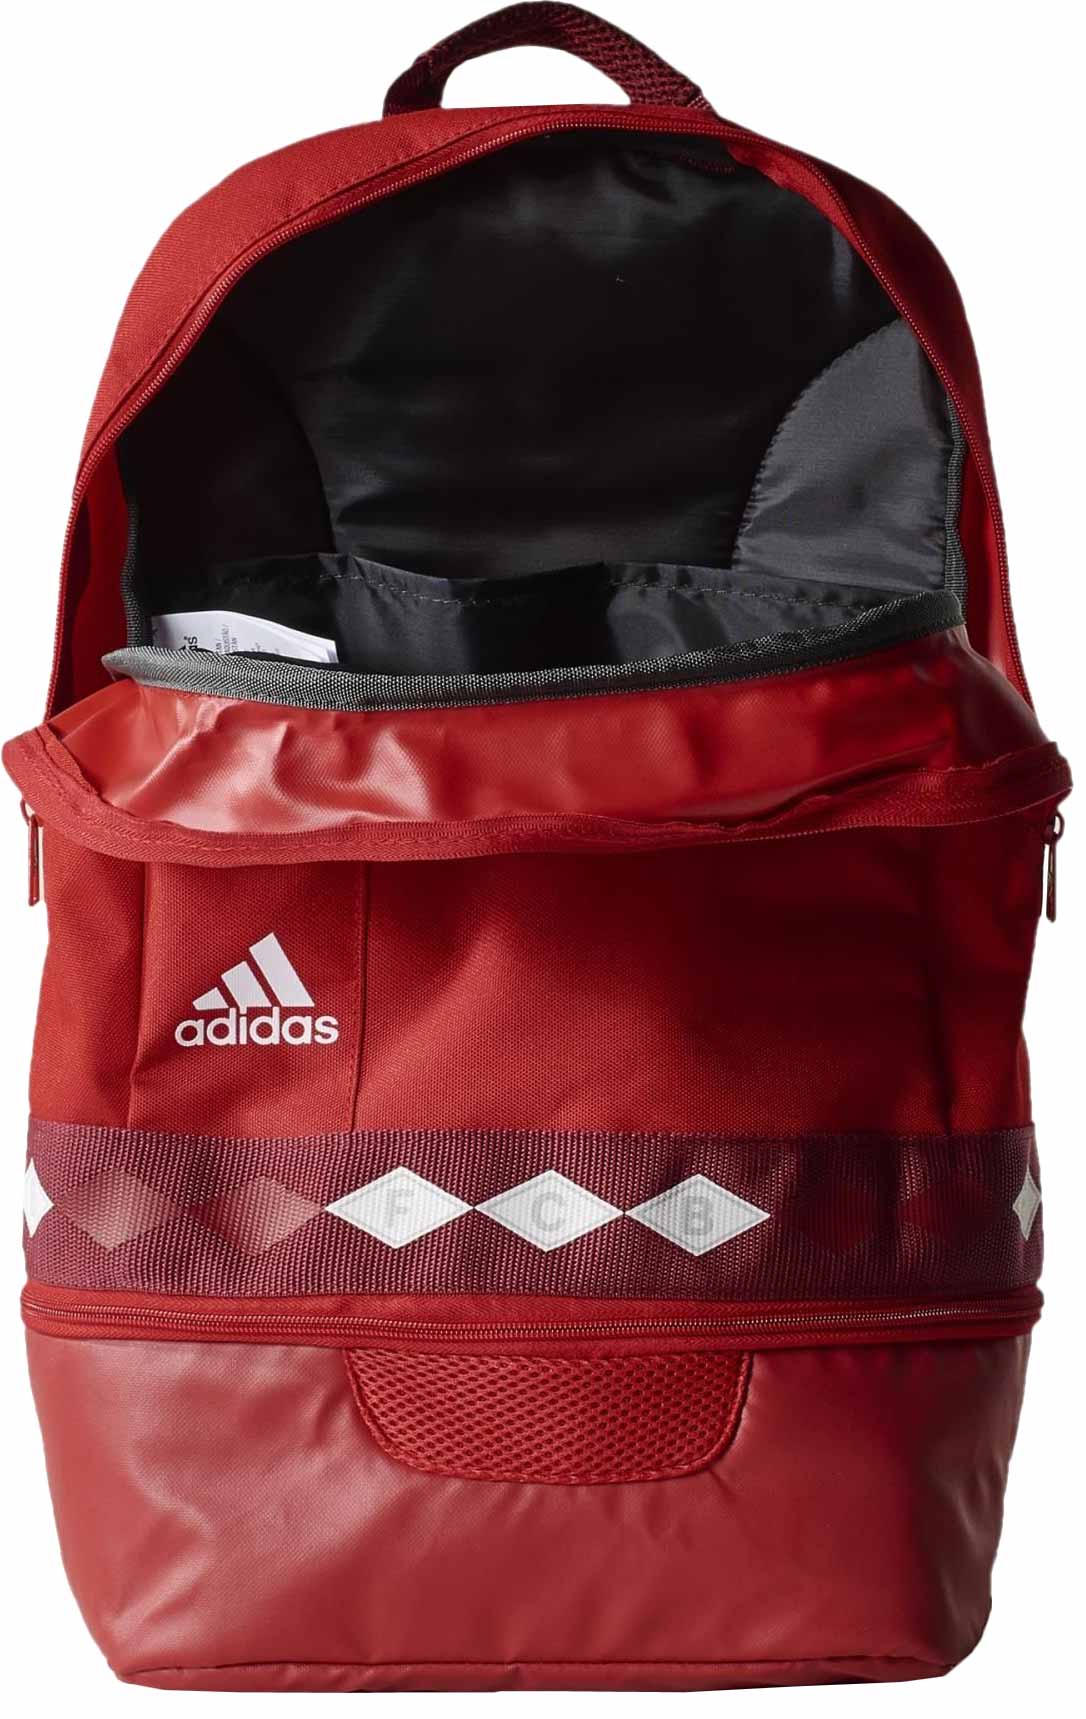 FCB BP - Backpack